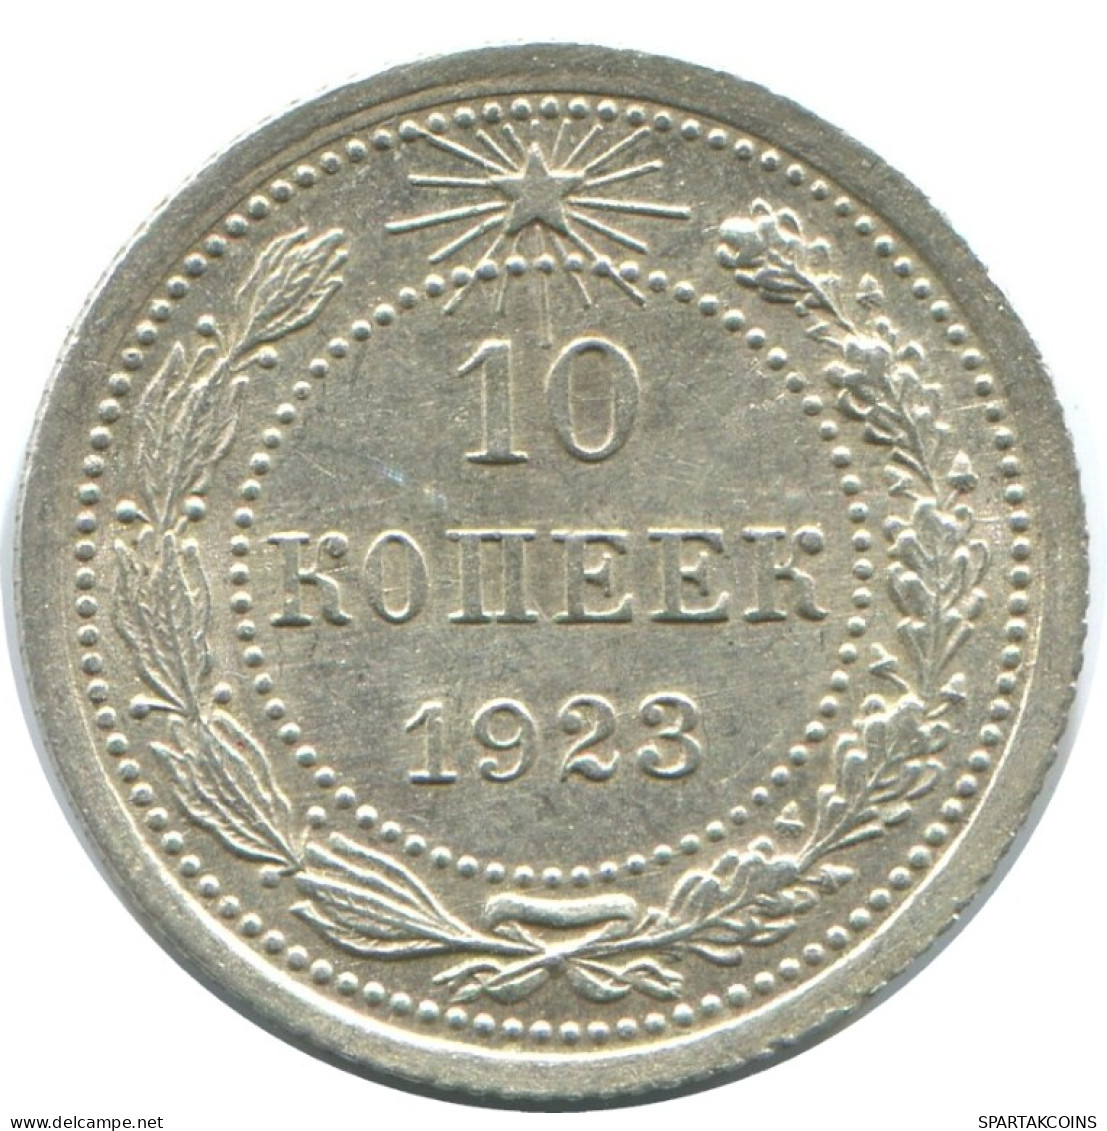 10 KOPEKS 1923 RUSSLAND RUSSIA RSFSR SILBER Münze HIGH GRADE #AE982.4.D.A - Russland